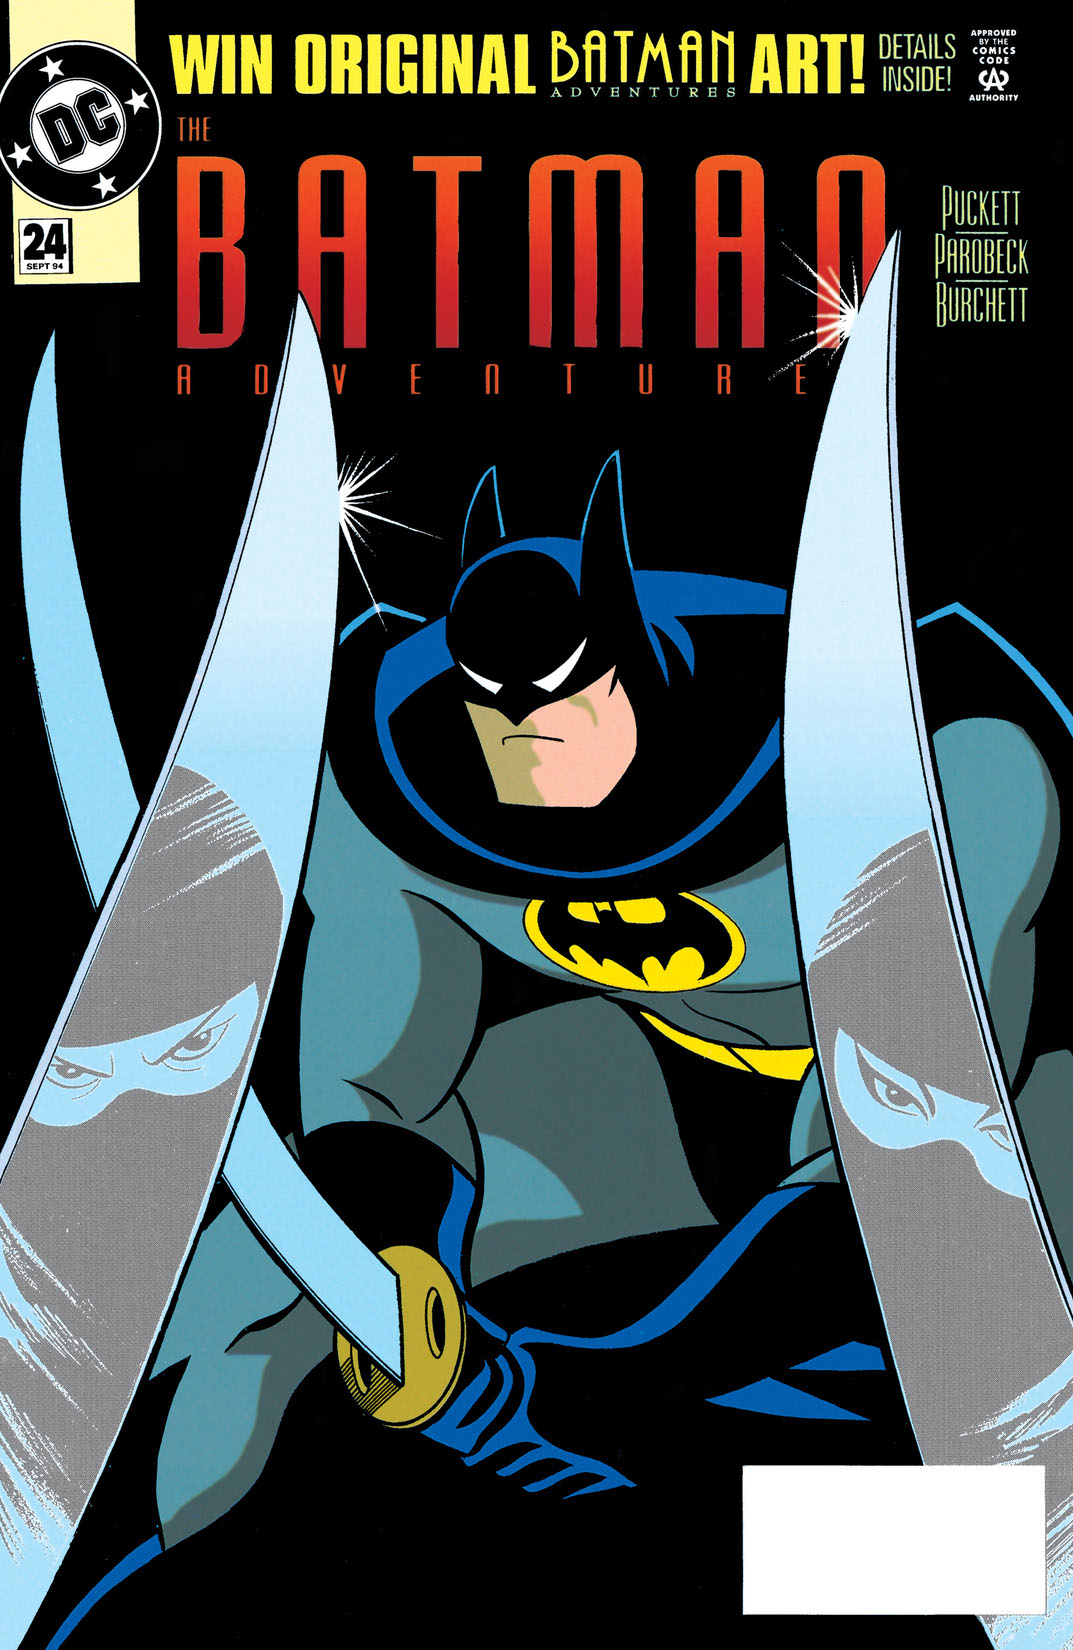 The Batman Adventures #24 preview images